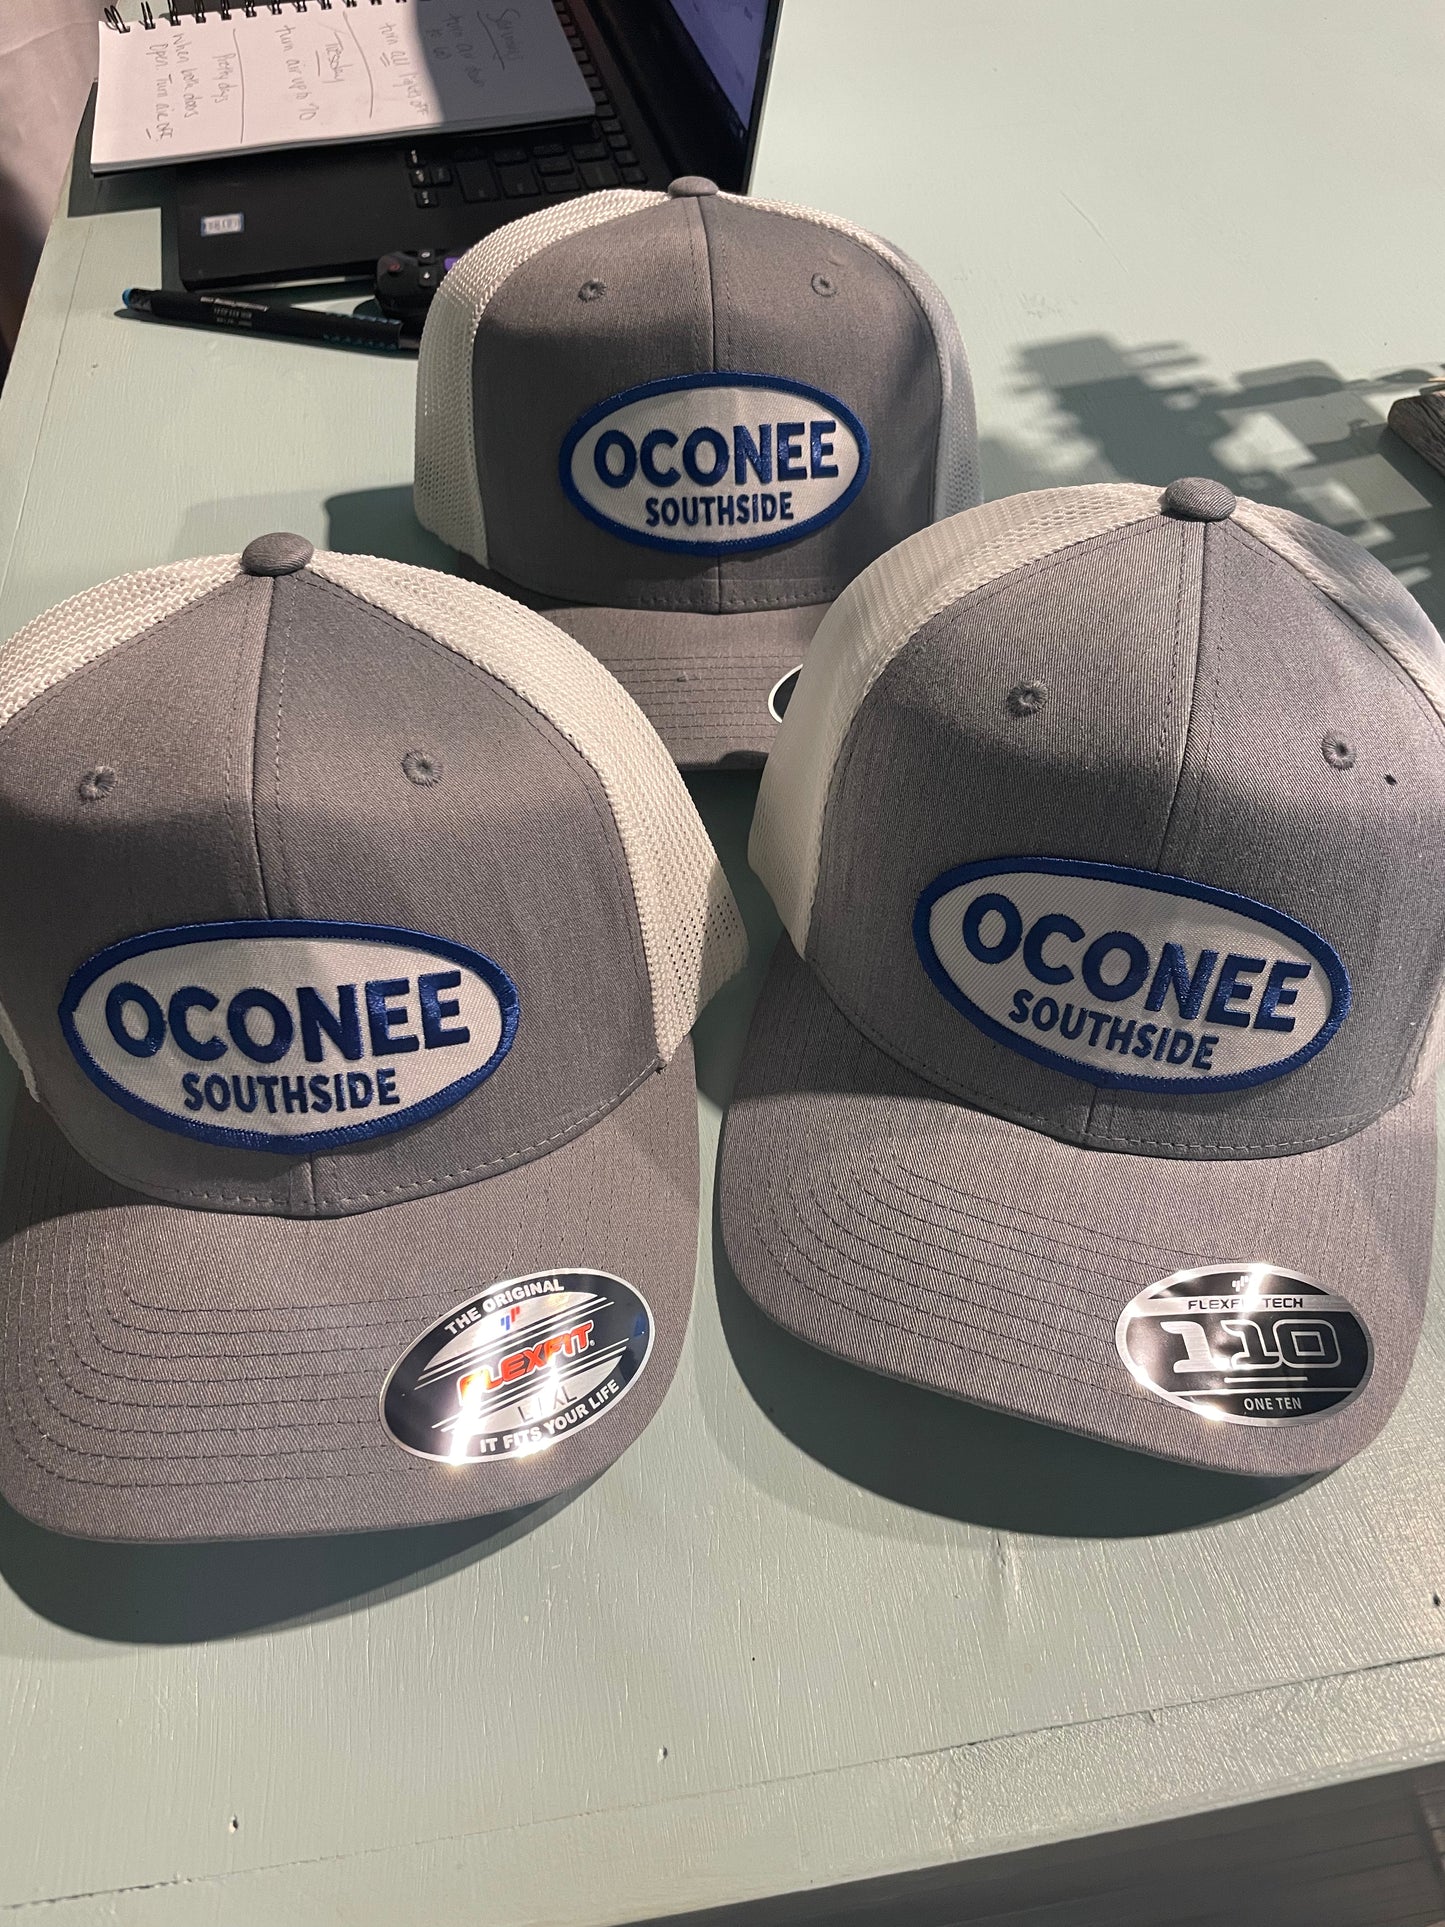 Oconee Southside hat